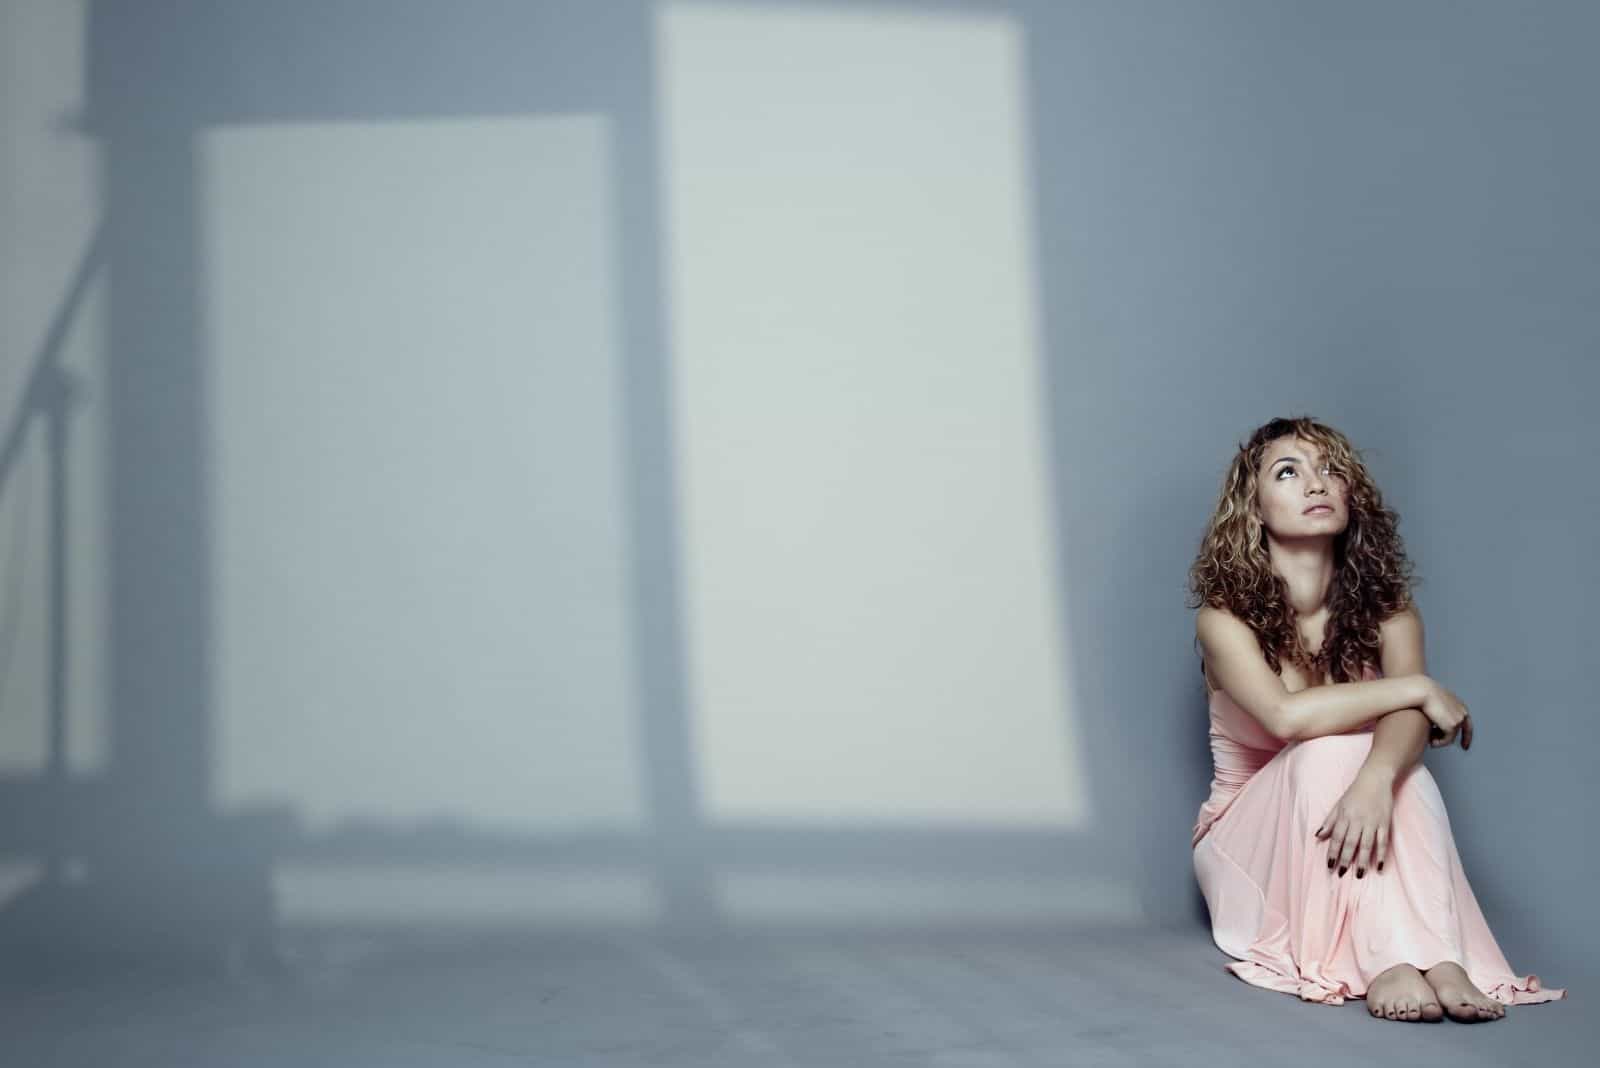 donna triste seduta sul pavimento con la luce che entra dalle finestre